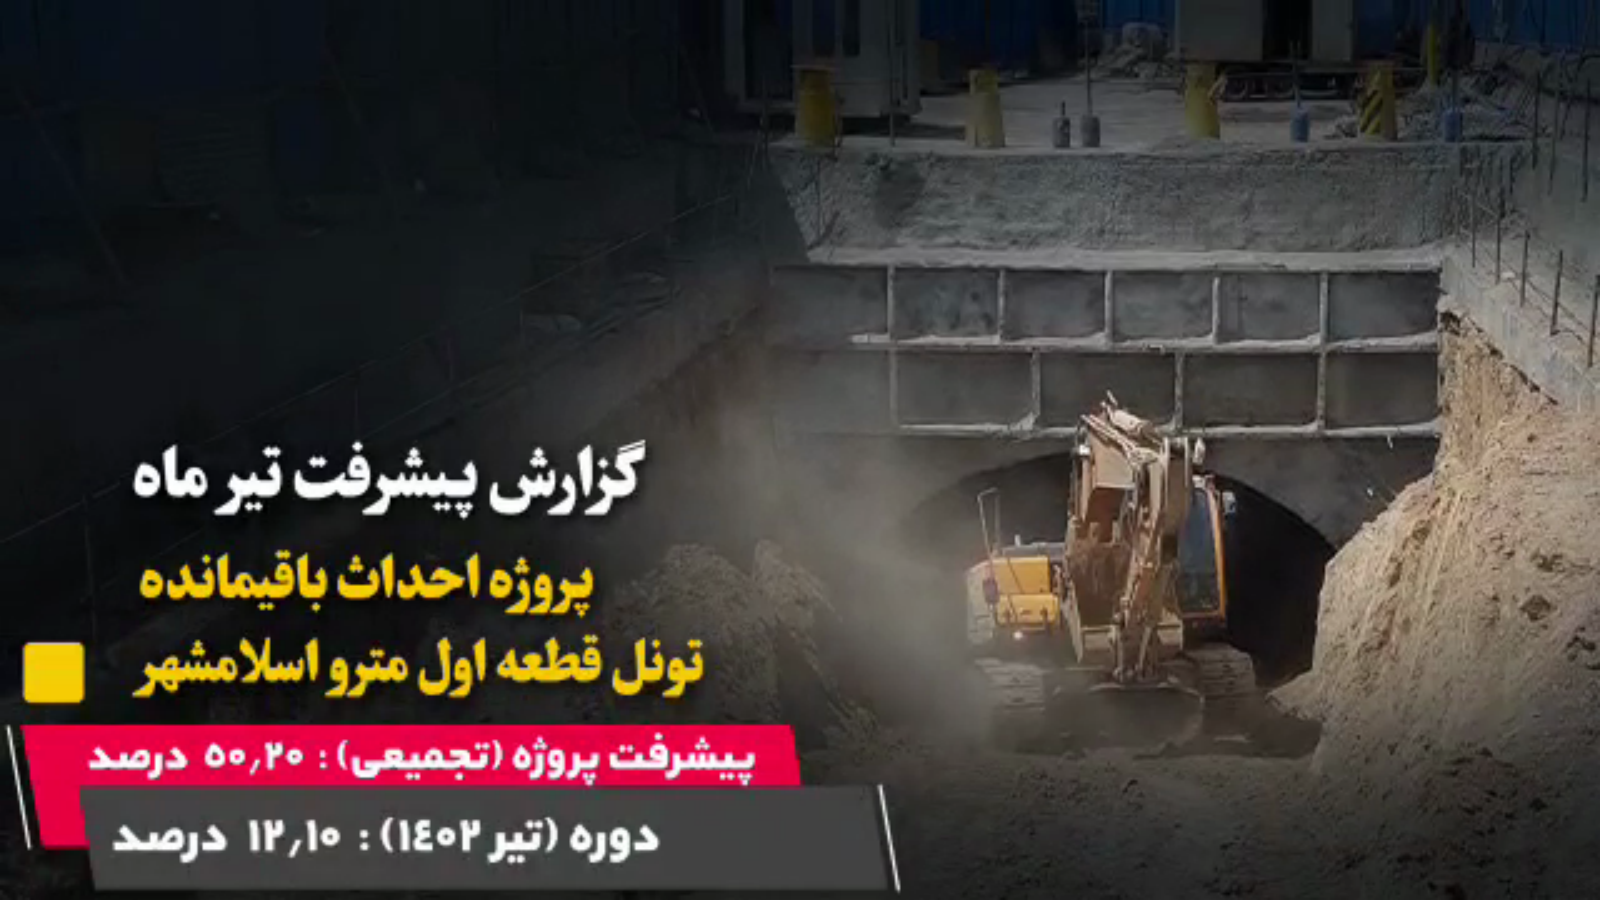 گزارش ماهیانه پیشرفت پروژه احداث باقیمانده تونل قطعه اول مترو اسلامشهر در تیر ماه: